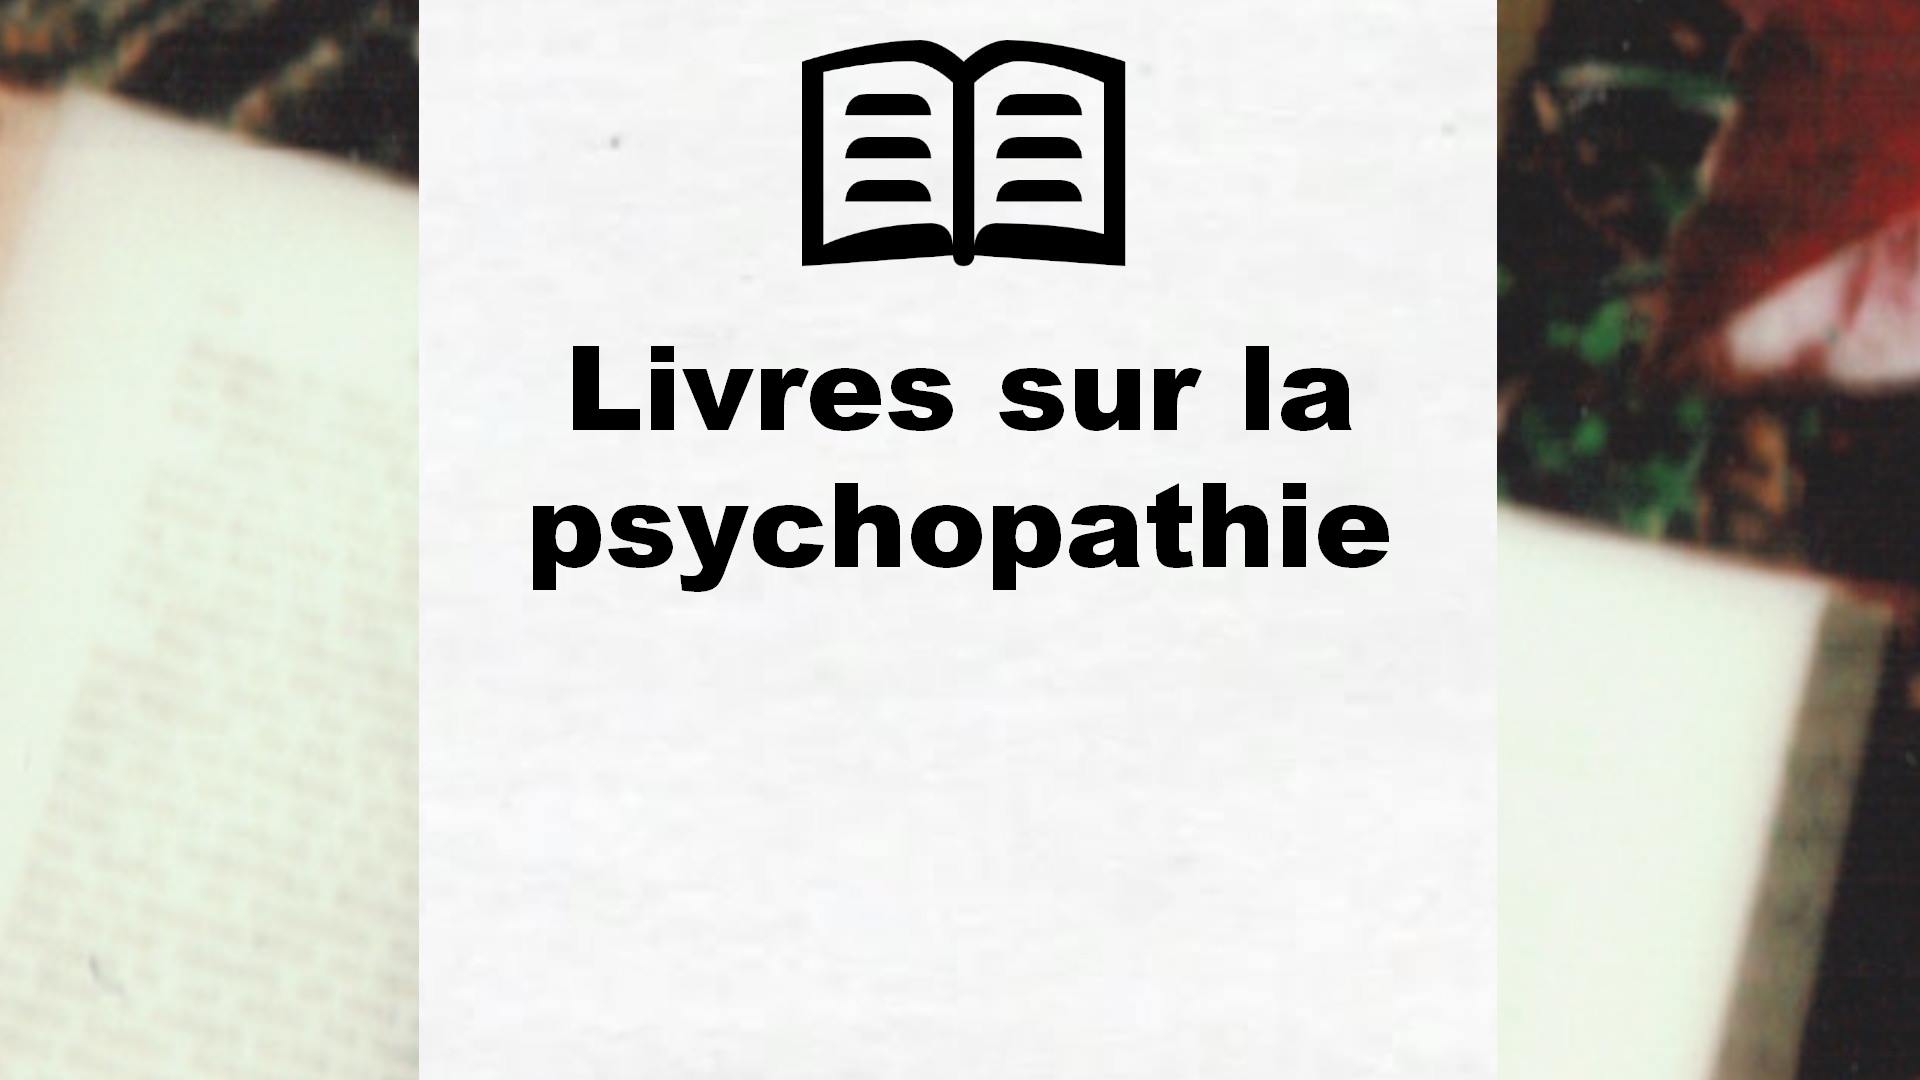 Livres sur la psychopathie